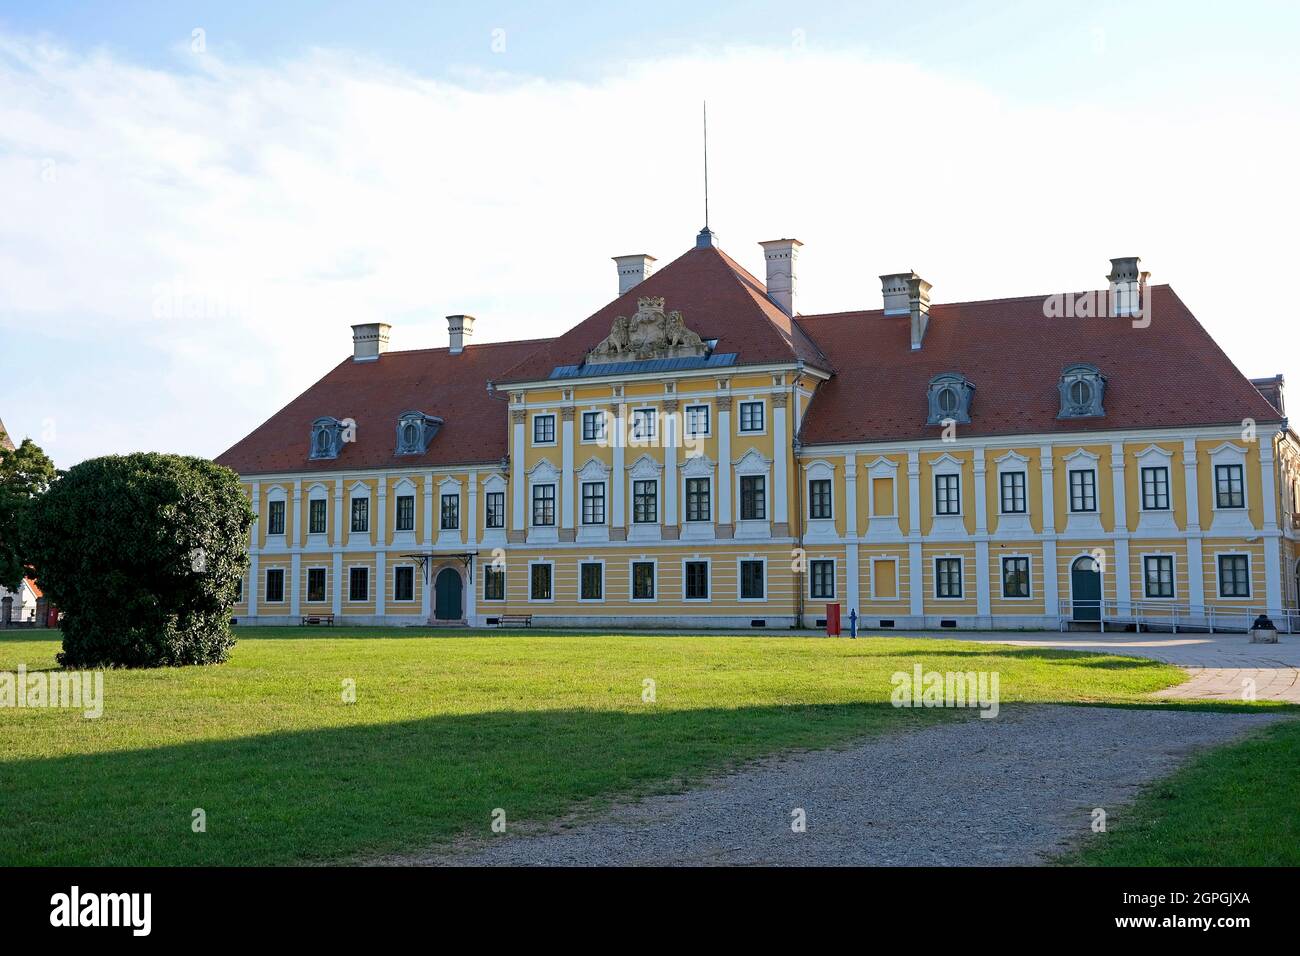 Croazia, Slavonia, Vukovar, castello di Eltz, palazzo barocco del XVIII secolo che ospita il museo comunale di Vukovar, distrutto dopo la guerra croata poi restaurato nel 2011 Foto Stock